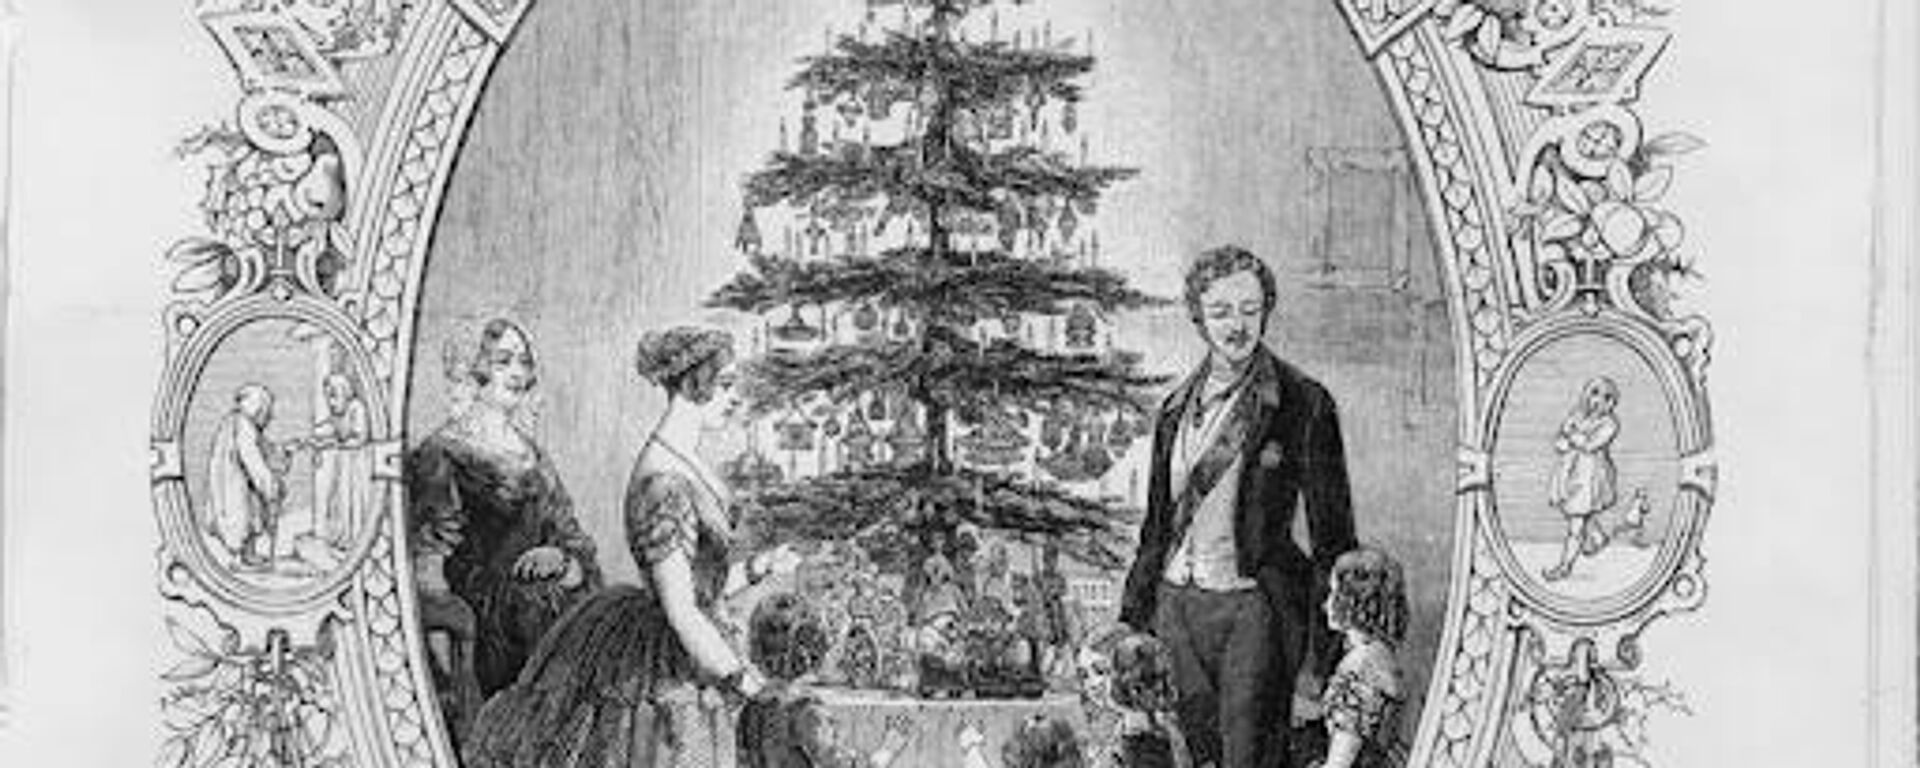 Grabado sobre el árbol de Navidad en México, en el siglo XIX.  - Sputnik Mundo, 1920, 18.12.2021